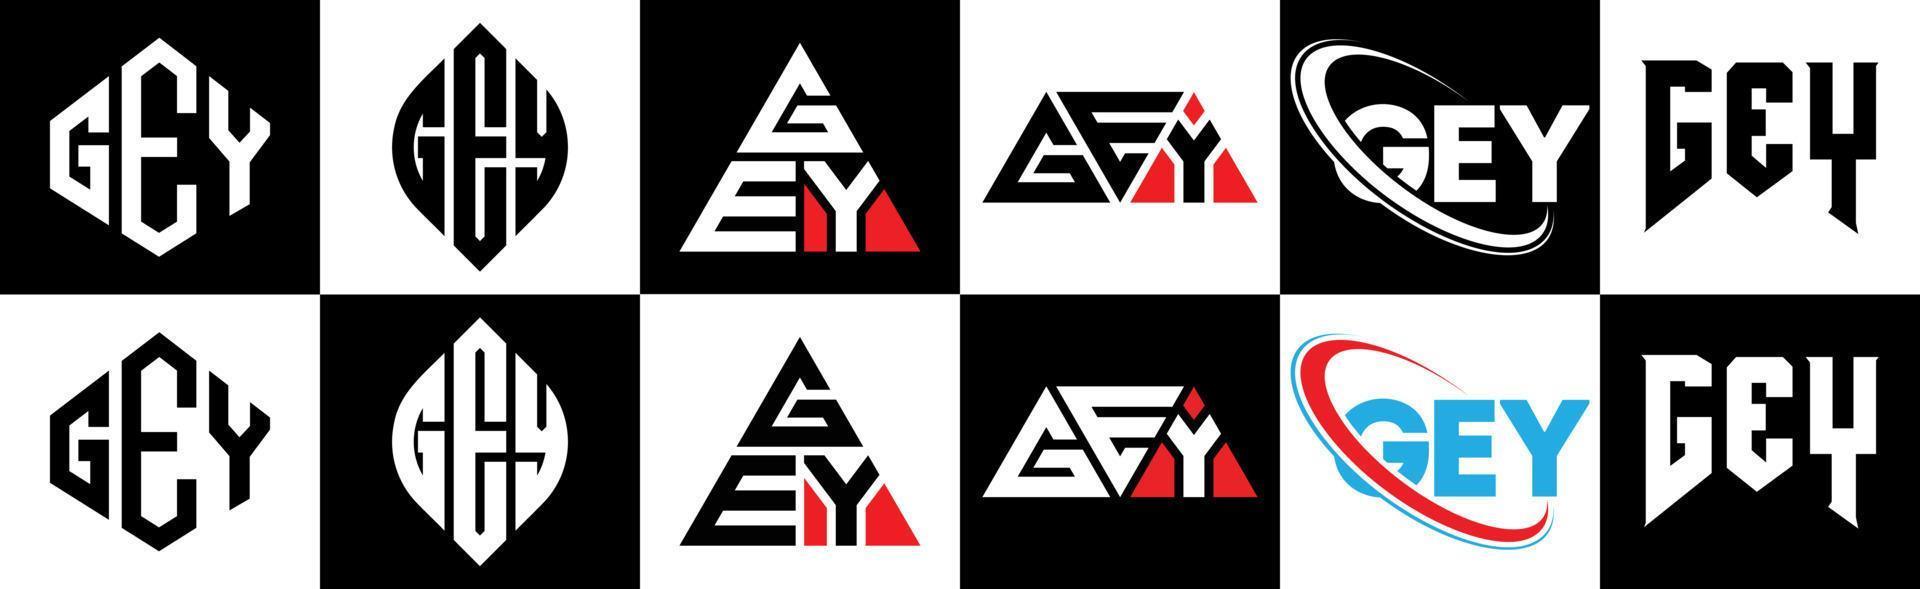 Gey-Buchstaben-Logo-Design in sechs Stilen. Gey Polygon, Kreis, Dreieck, Sechseck, flacher und einfacher Stil mit schwarzem und weißem Farbvariations-Buchstabenlogo in einer Zeichenfläche. Gey minimalistisches und klassisches Logo vektor